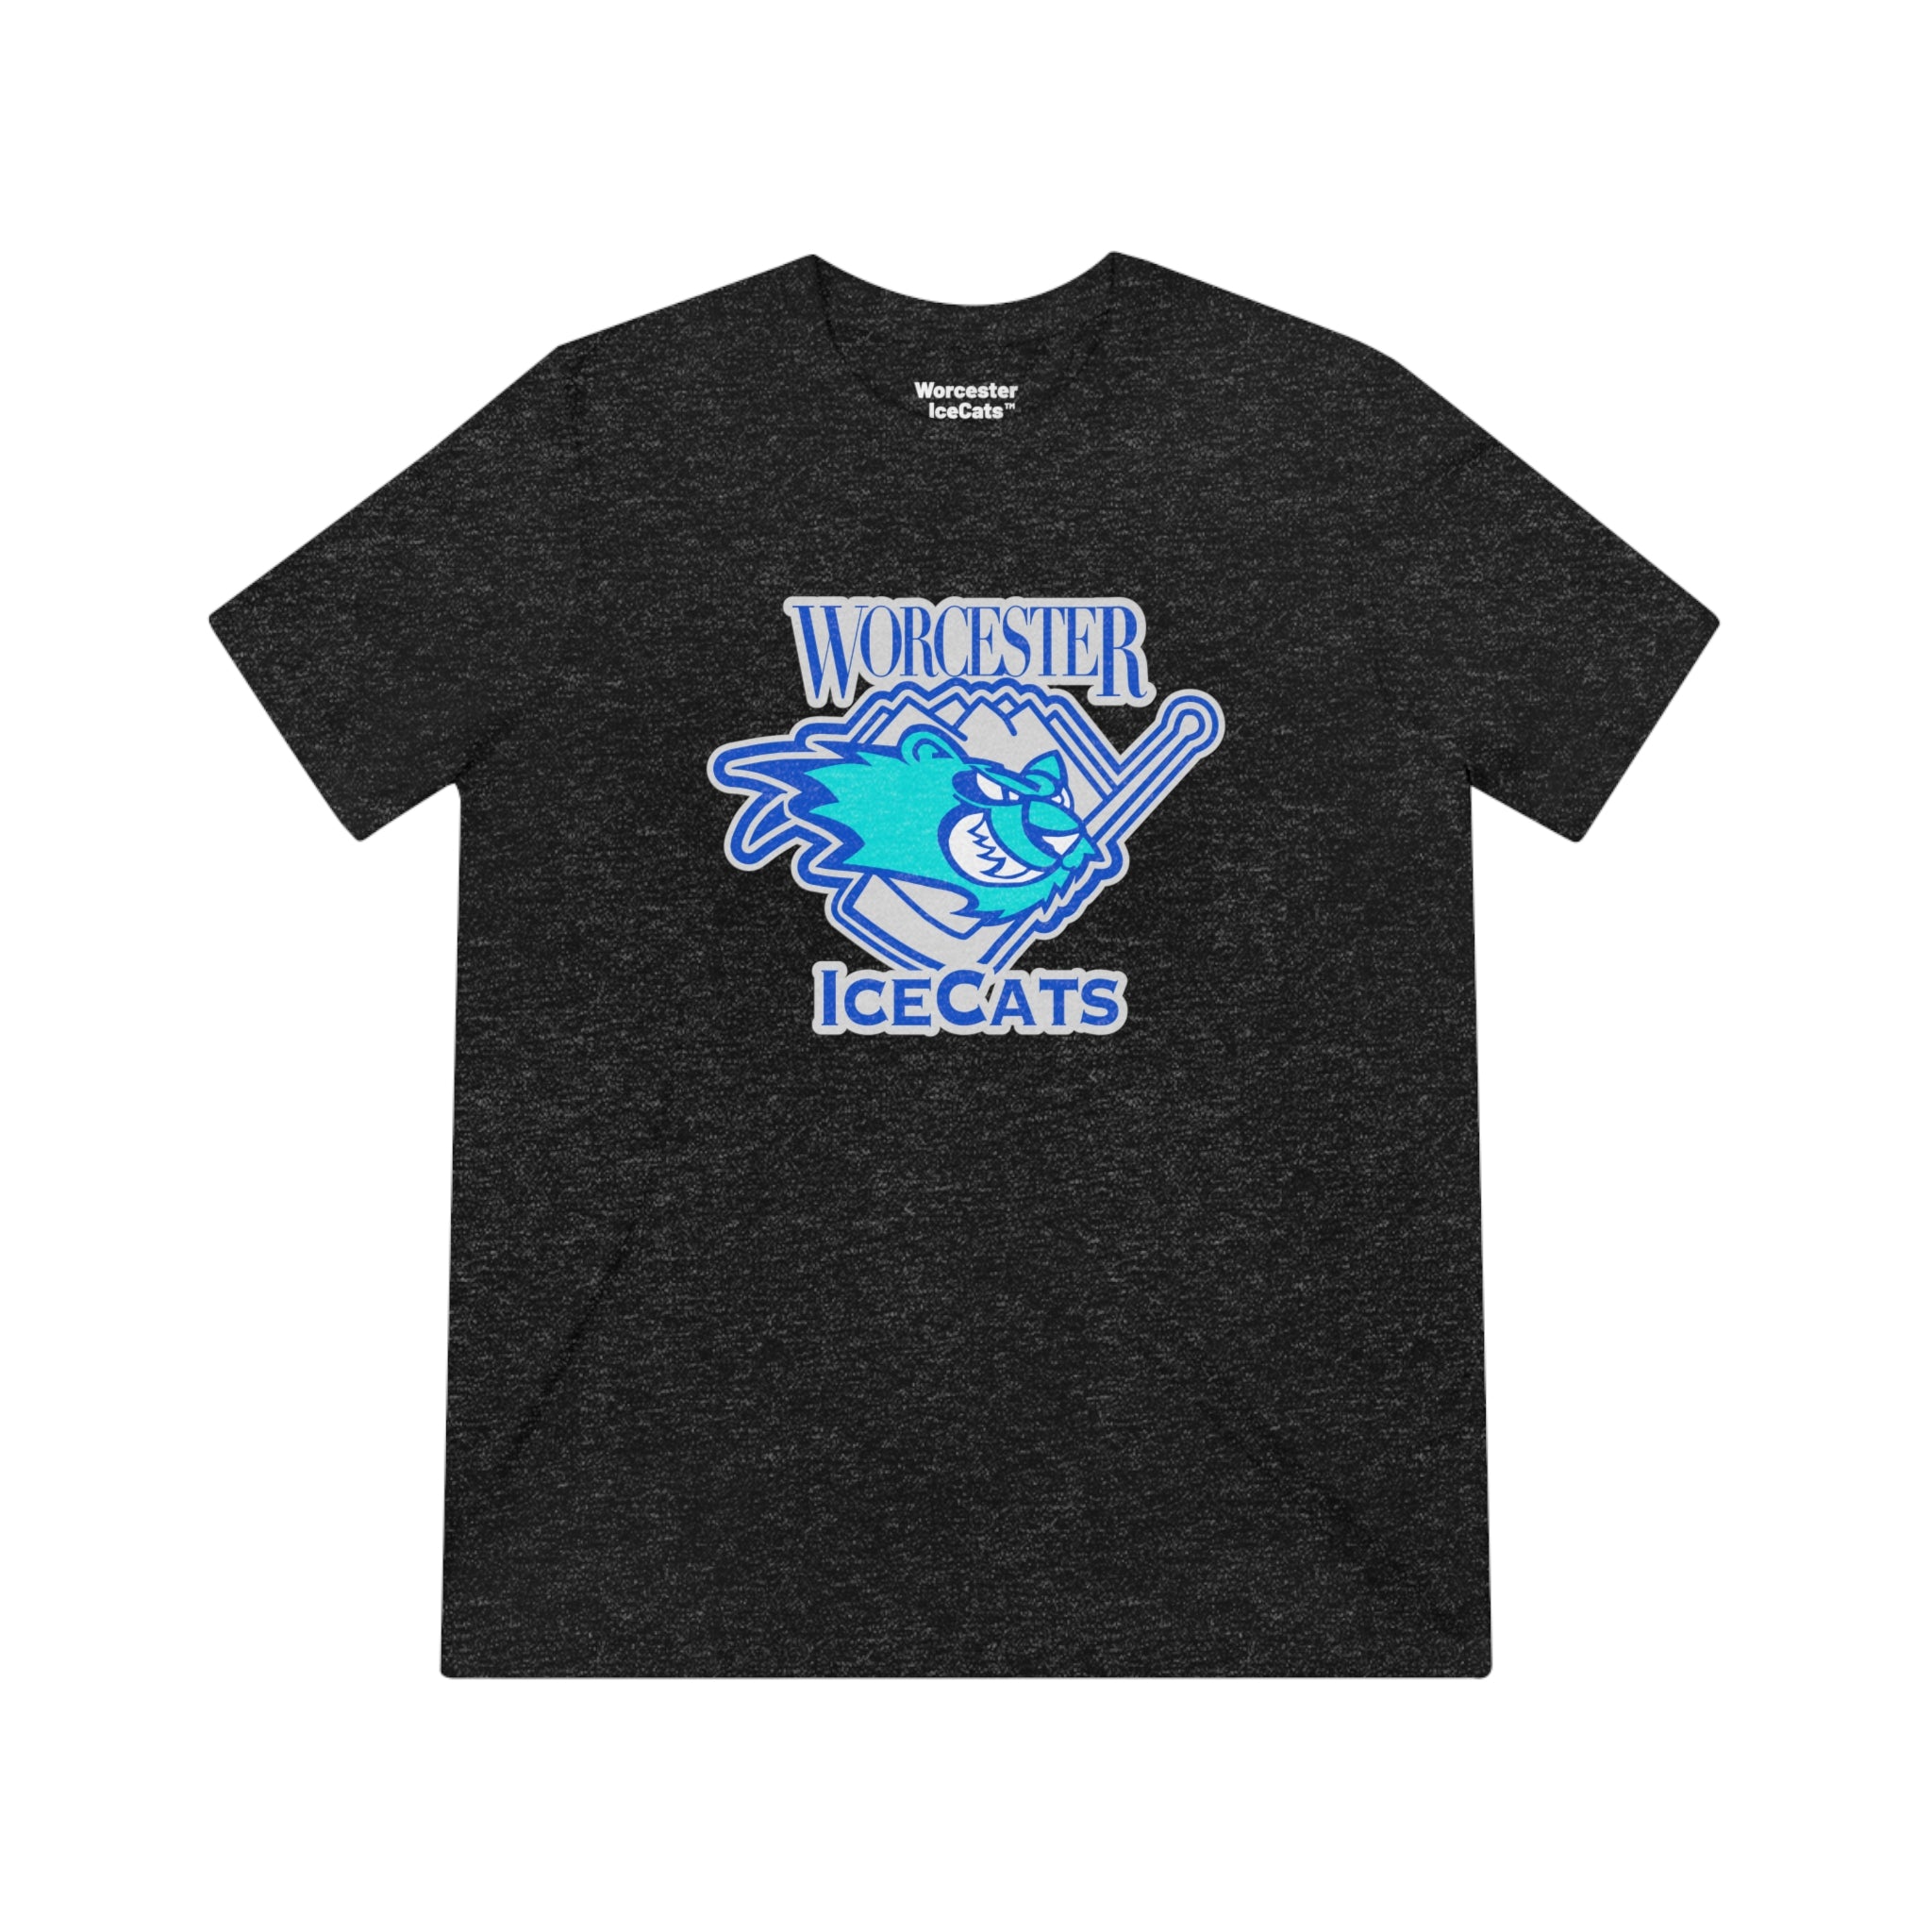 Worcester IceCats™ T-Shirt (Tri-Blend Super Light)